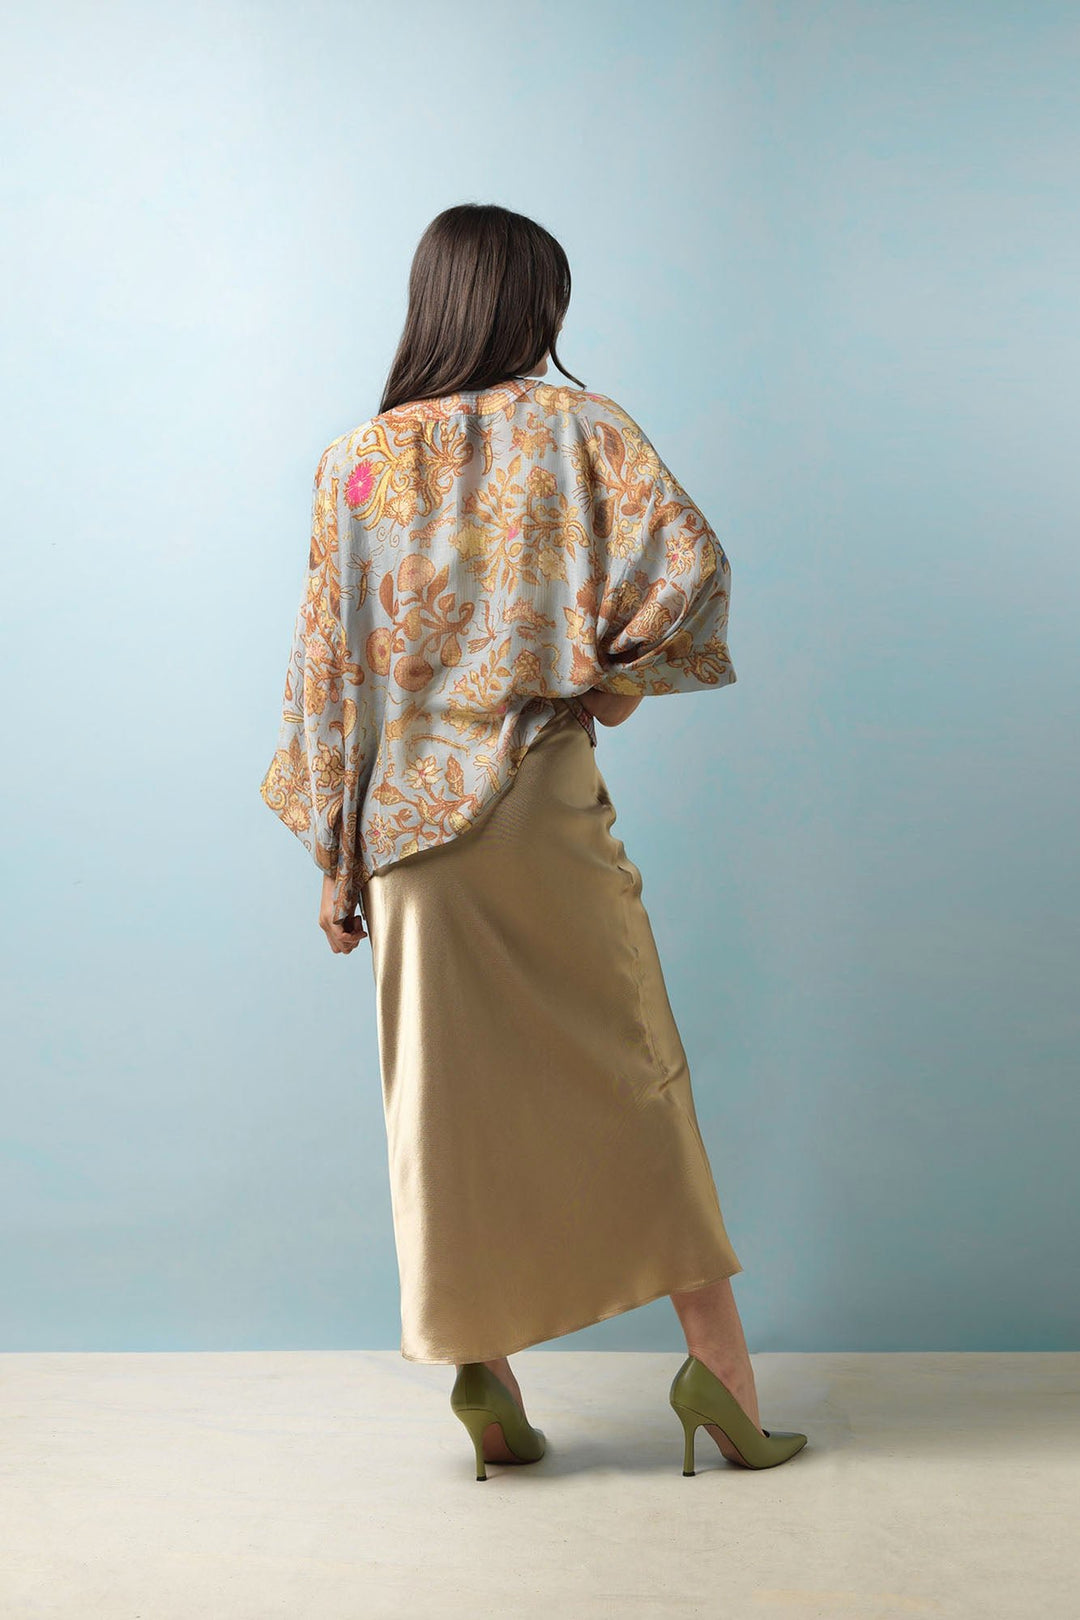 Tudor Rose Grey Kimono - One Hundred Stars